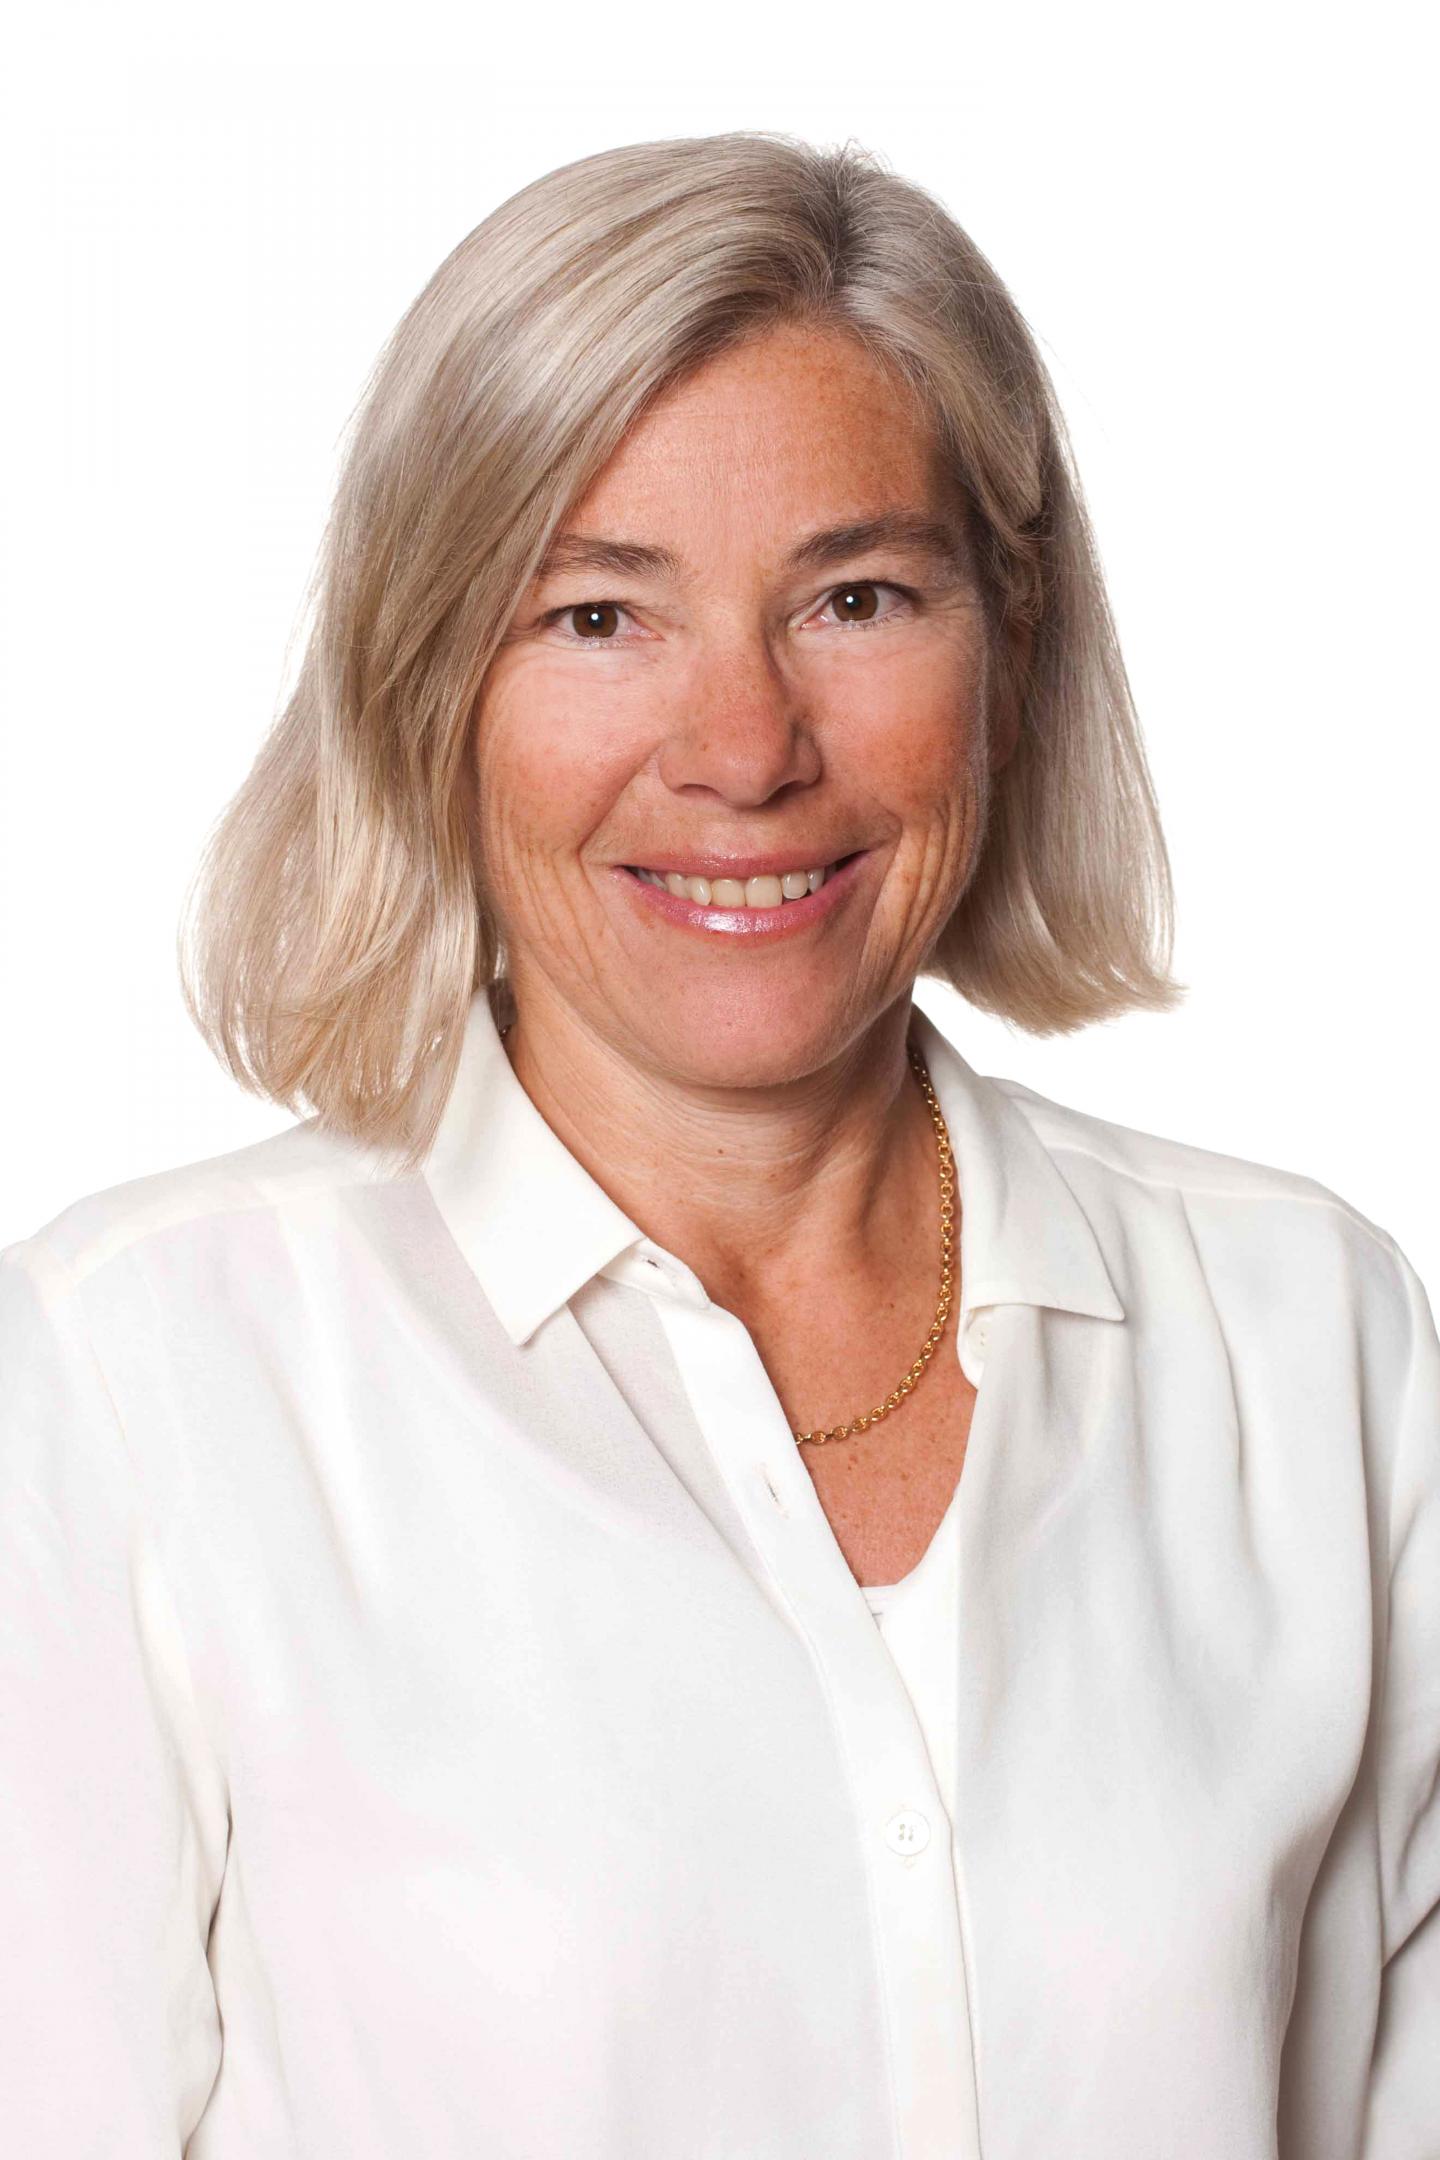 Christina Jern, University of Gothenburg